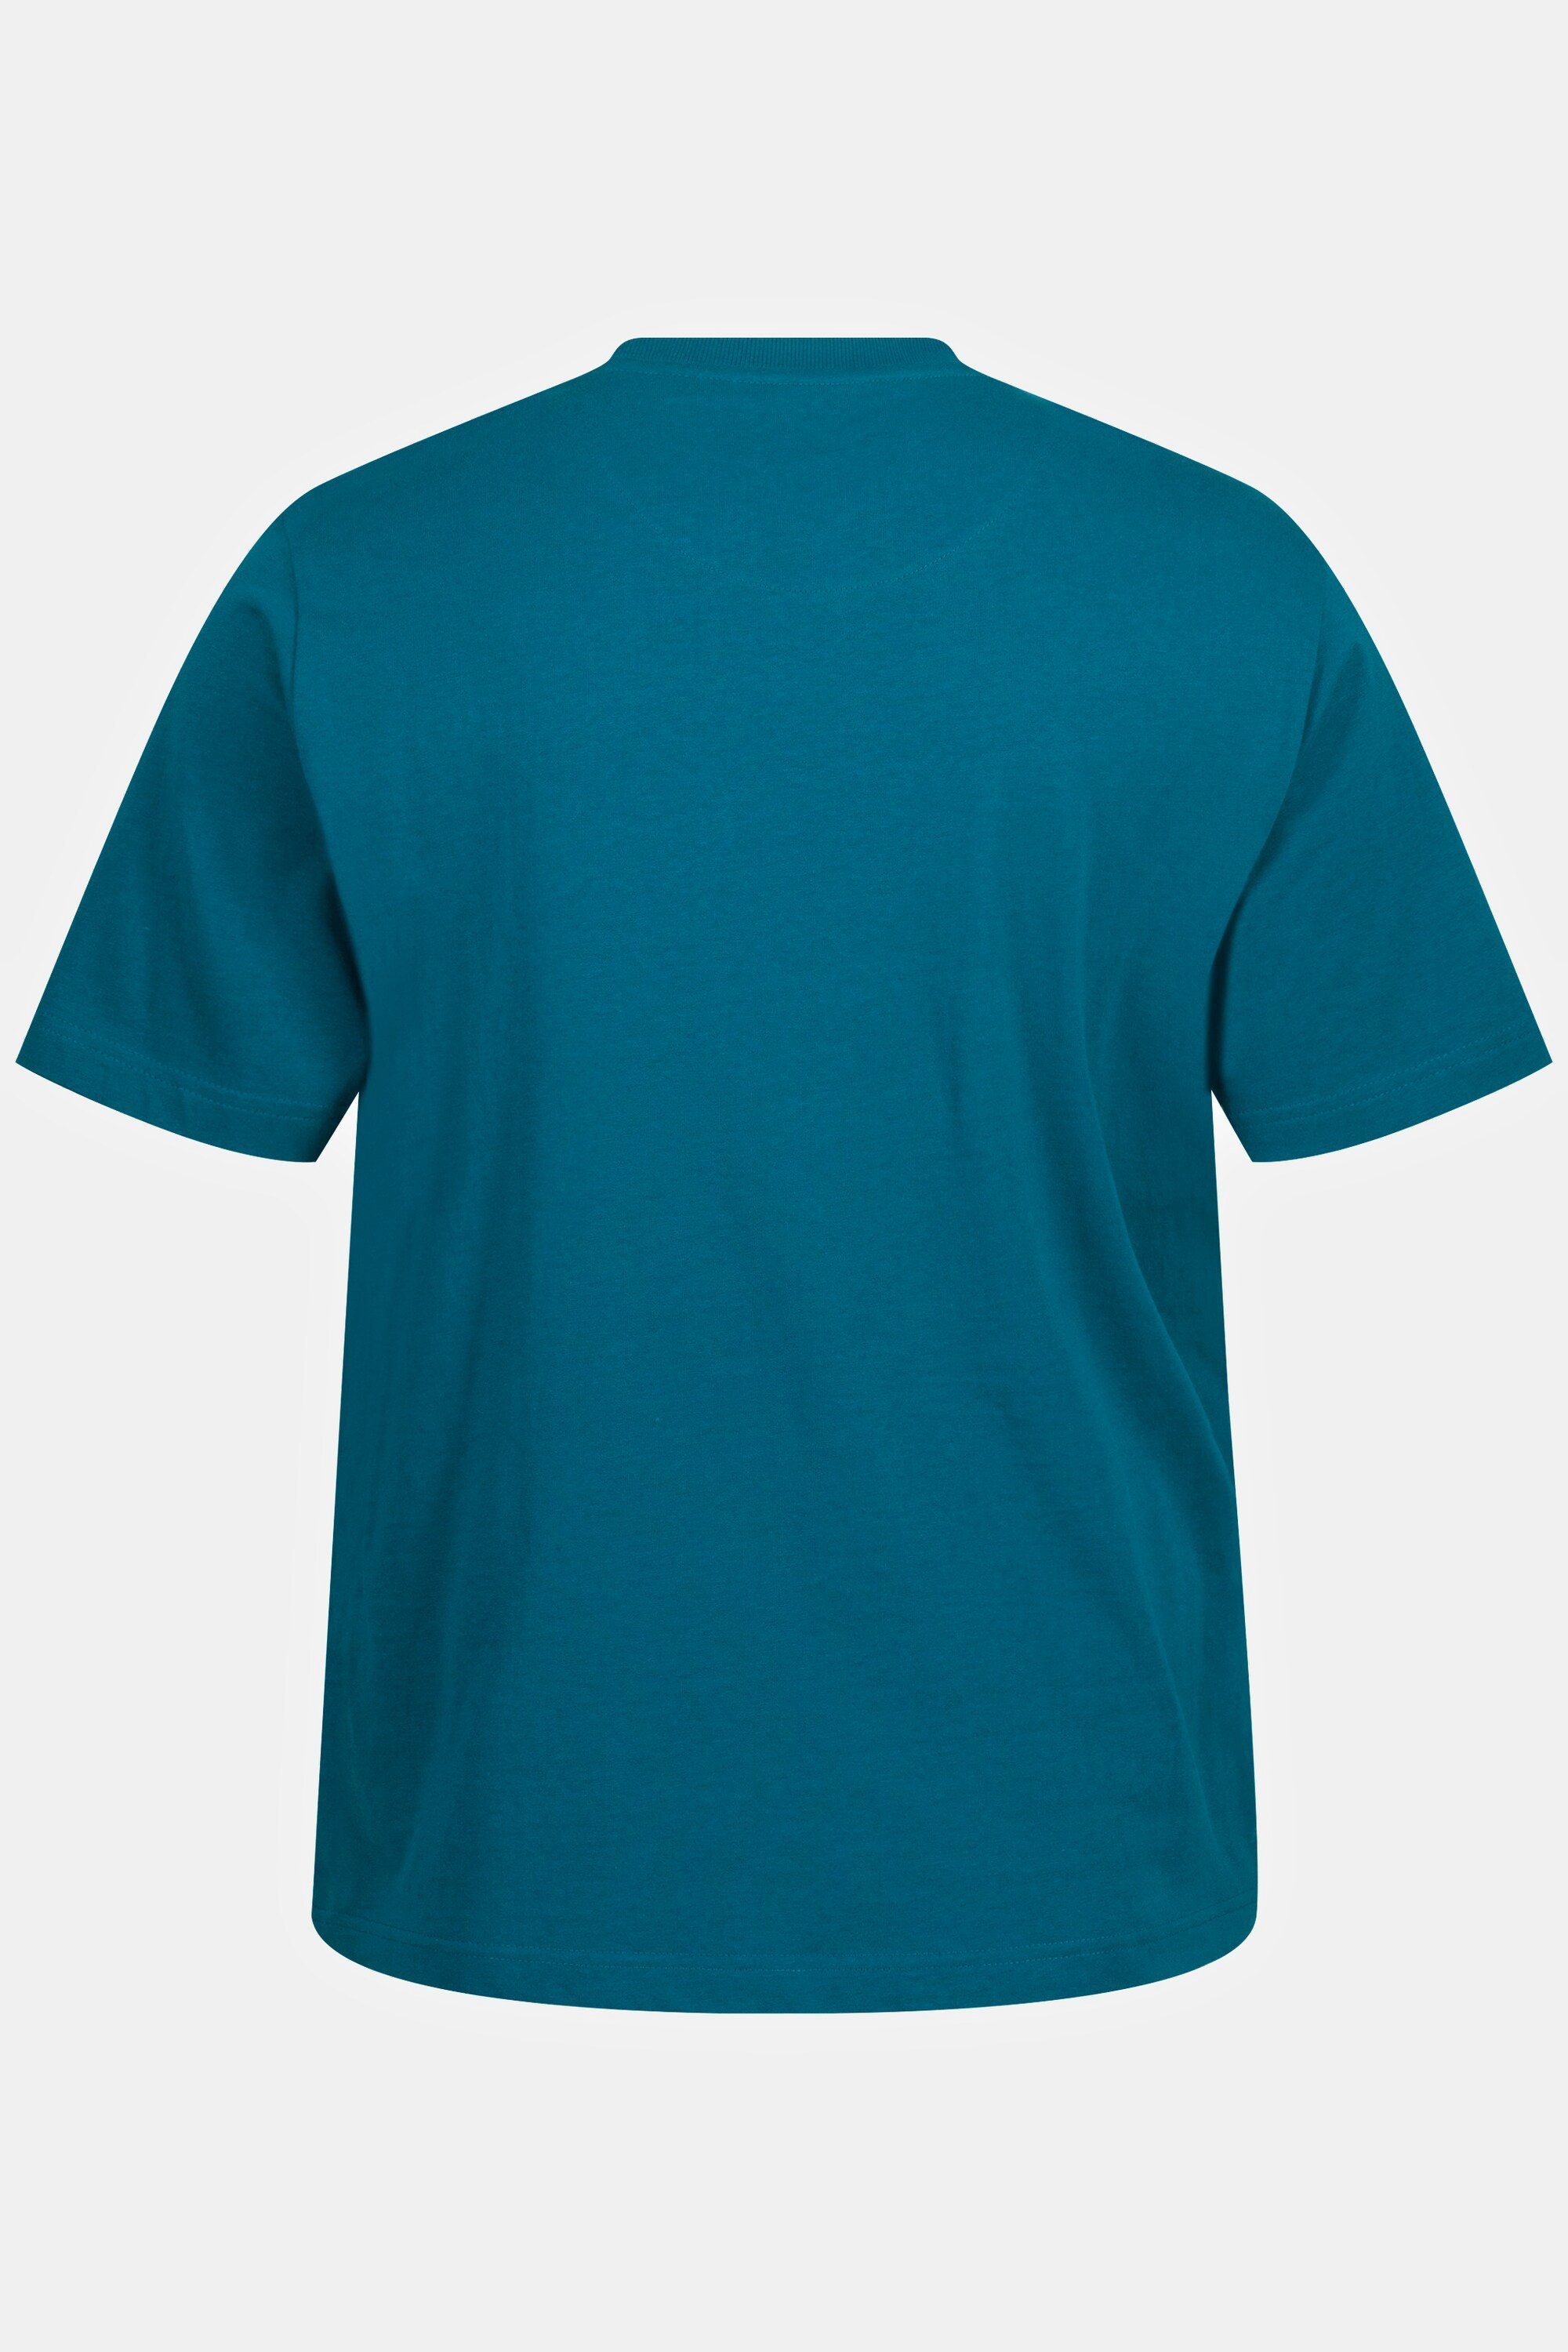 Rundhals T-Shirt JP1880 T-Shirt Halbarm Stickerei